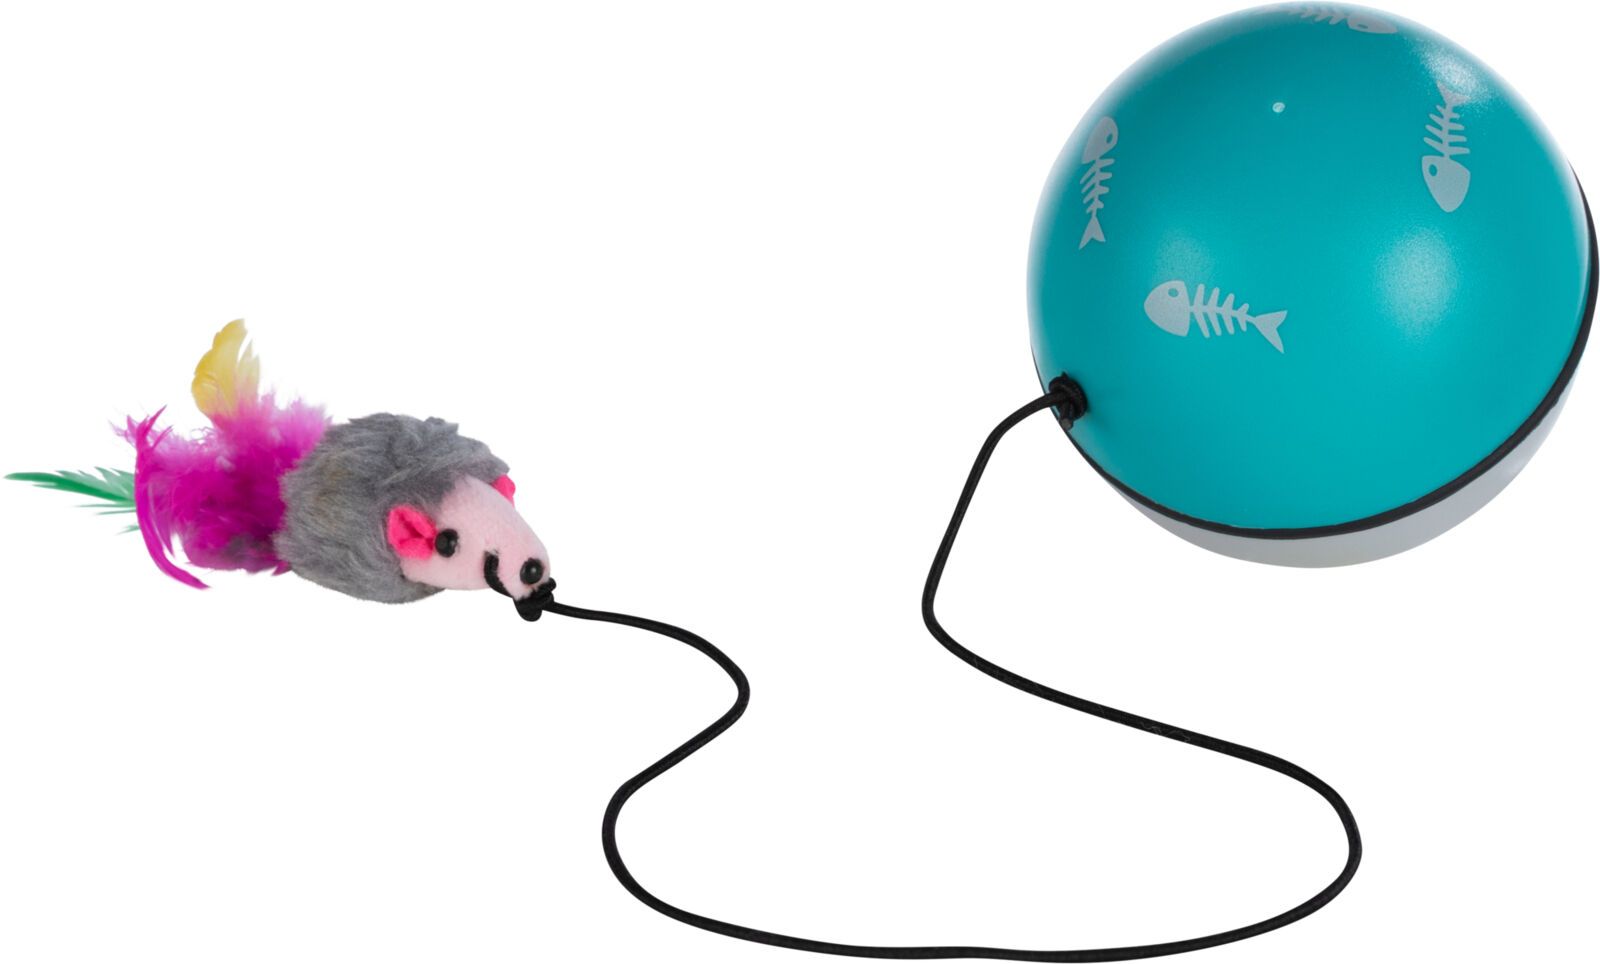 TRIXIE Ball Turbinio, mit Motor und Maus, Ø 9 cm